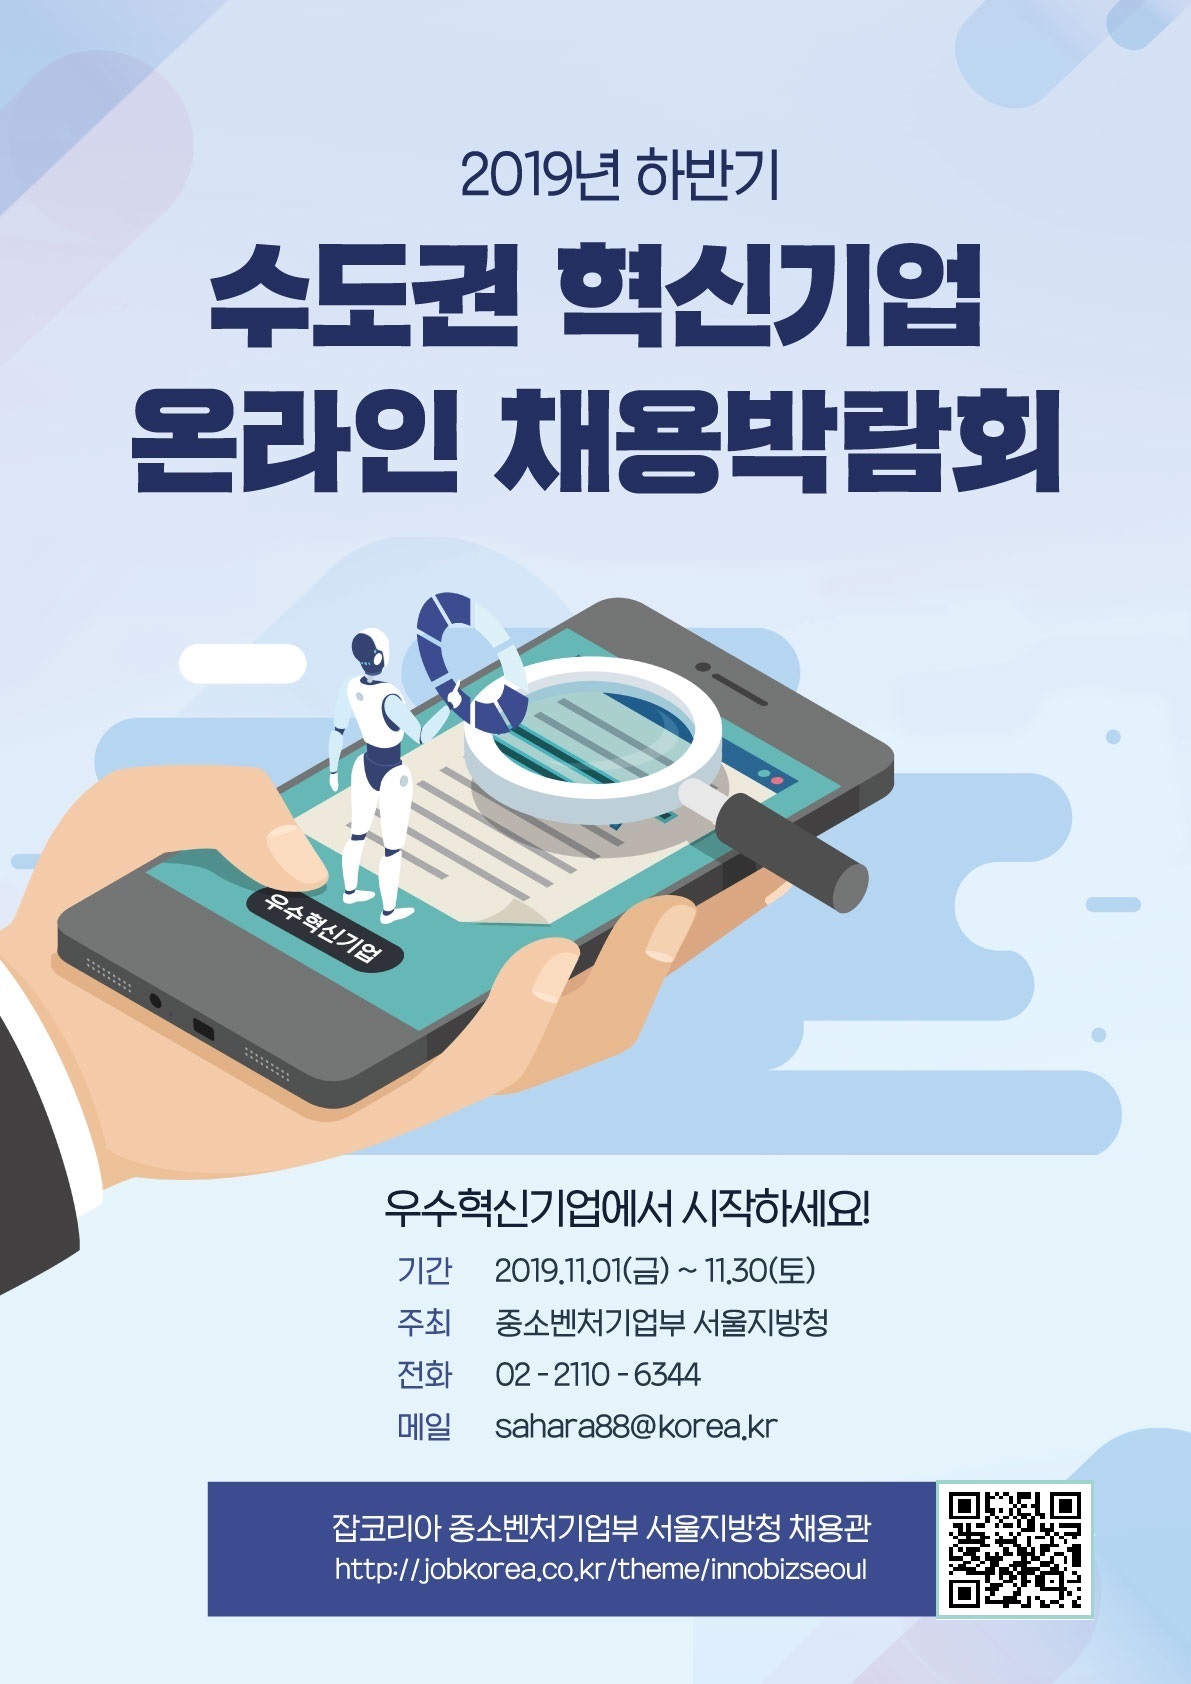 청년구직자 대상 2019년 하반기 수도권 혁신기업 온라인 채용박람회 개최 안내